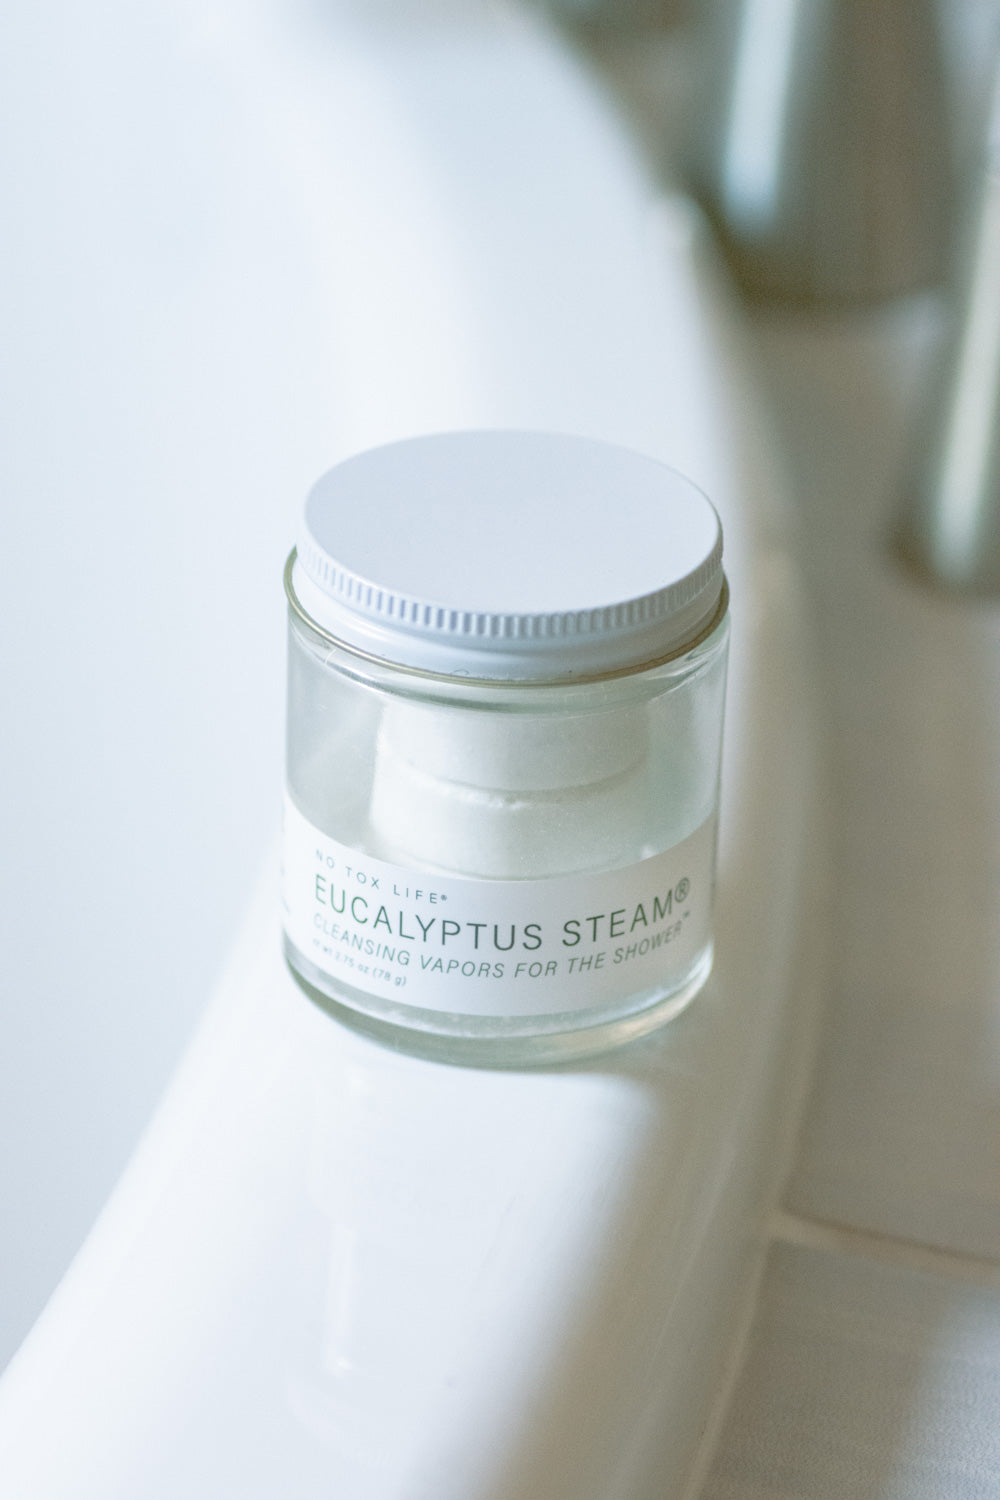 EUCALYPTUS STEAM® Cleansing vapors for the shower™ - Mini Jar - Case of 30